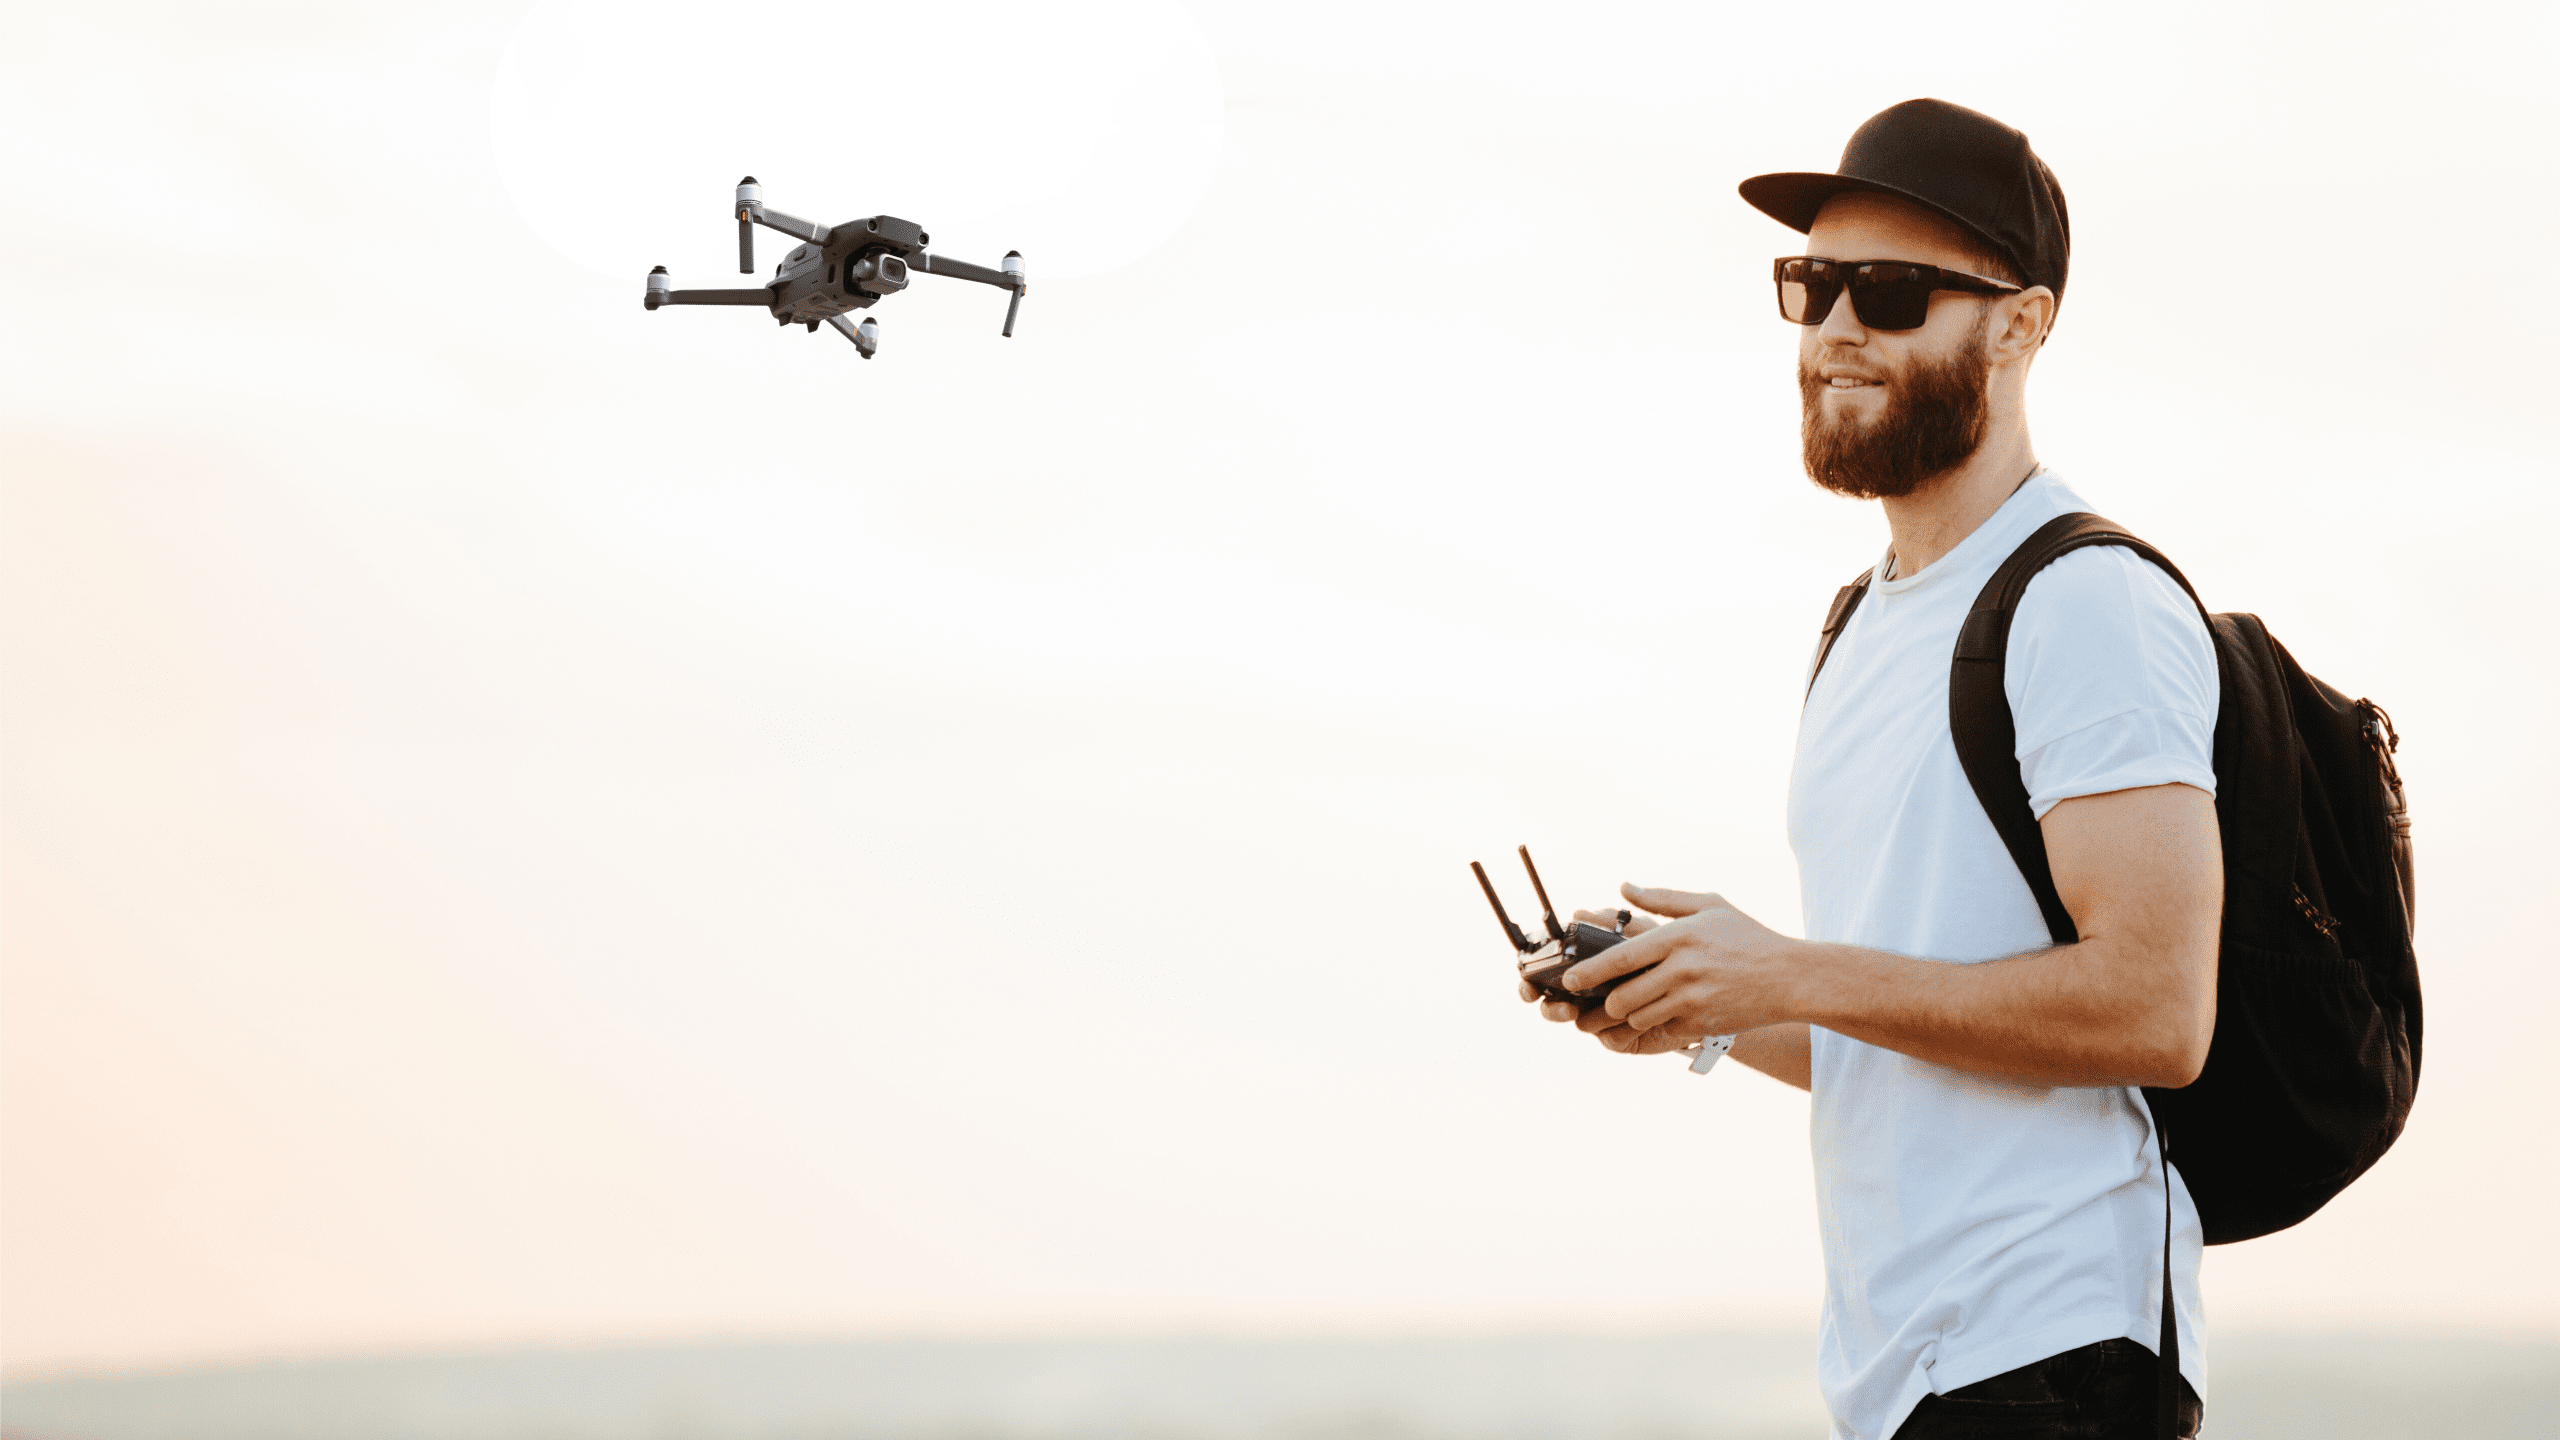 Drone Pilot Skill Builder Course